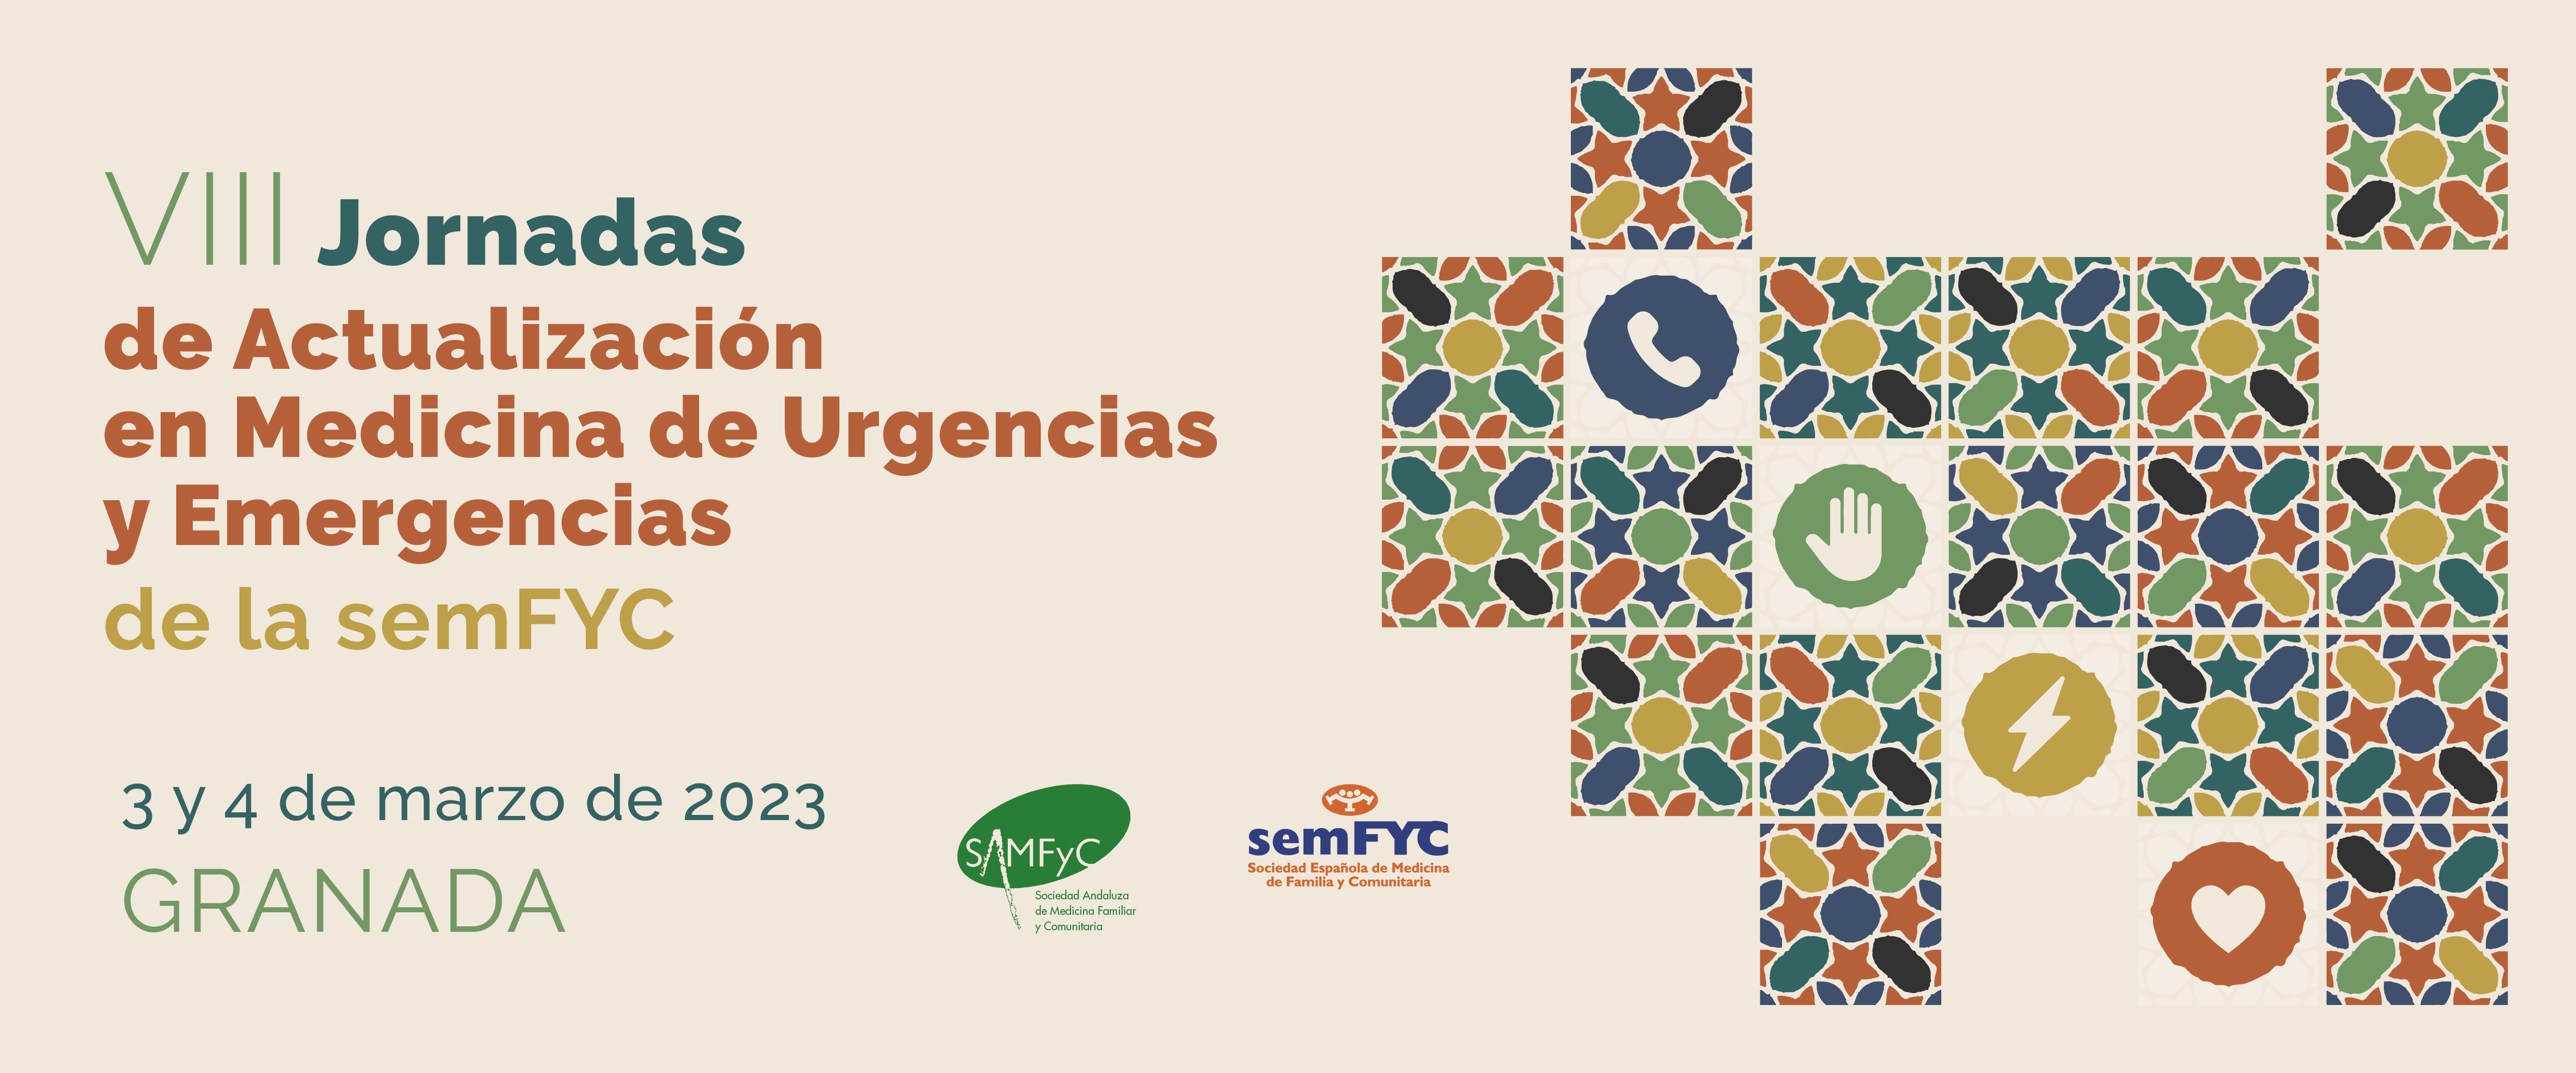 Las jornadas de urgencias y emergencias de la semFYC reúnen en Granada a más de 250 médicos y médicas de familia